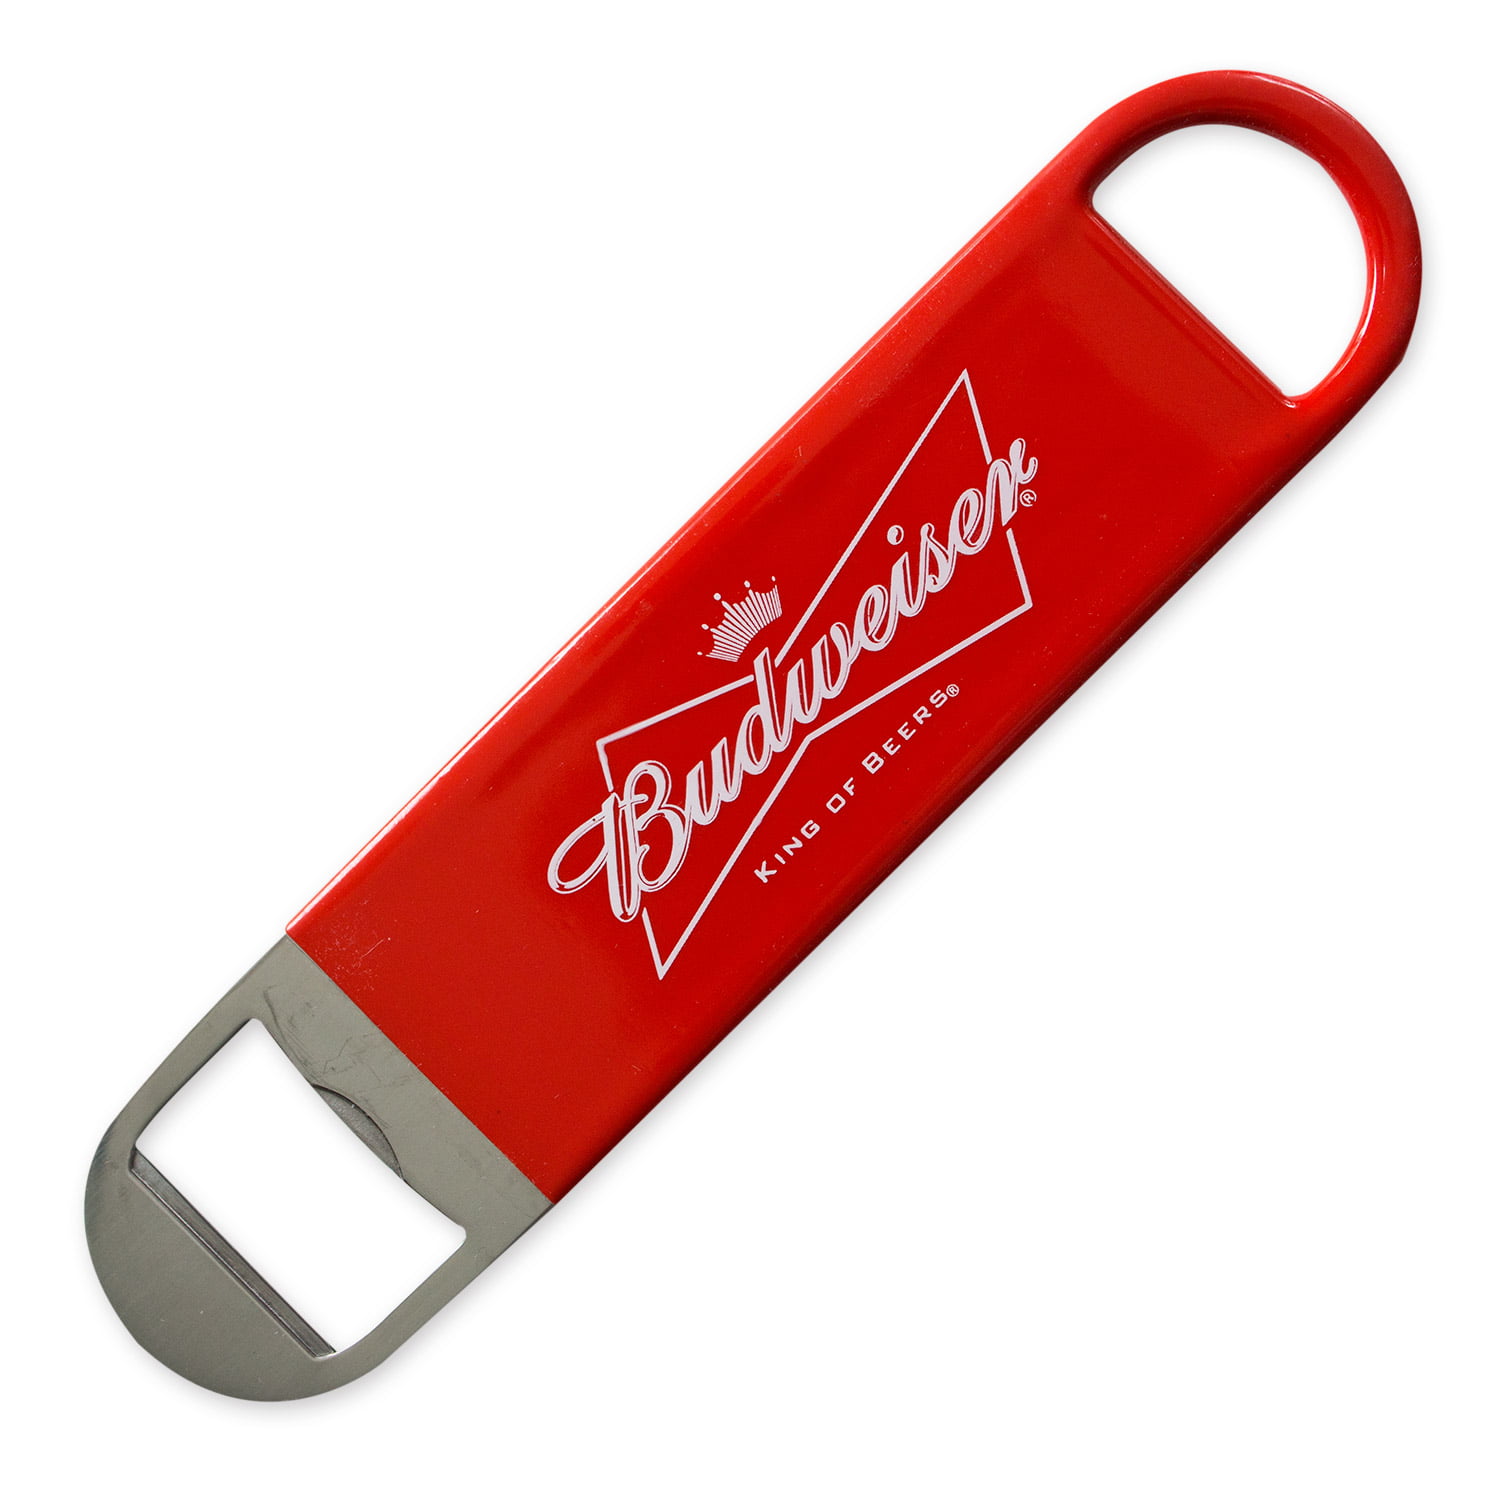 Budweiser Stainless Steel Beer Bottle Opener Speed Key 7" long New 